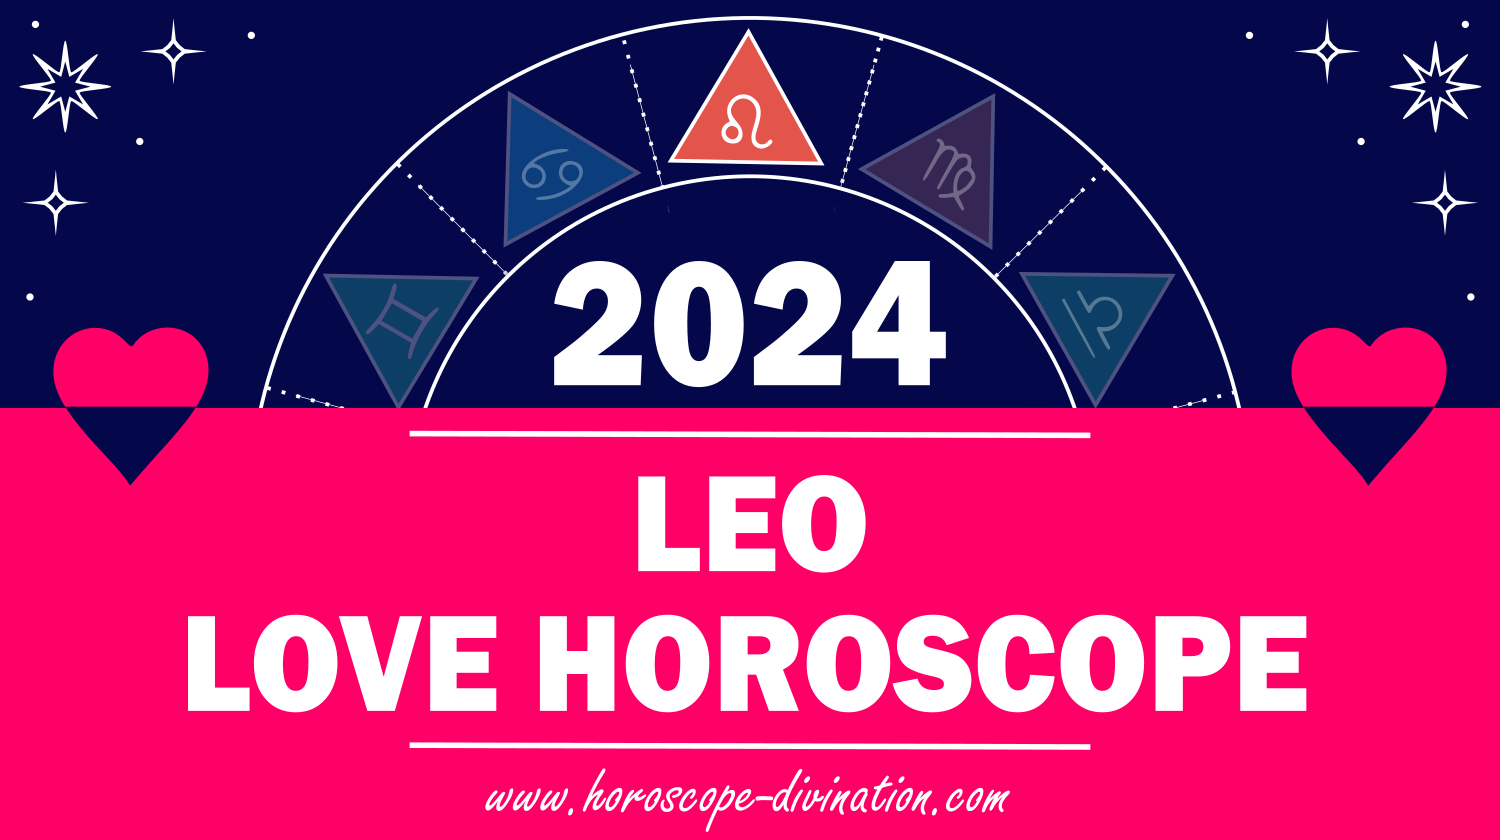 Leo Love Horoscope 2024 Love & Relationships prediction horoscope